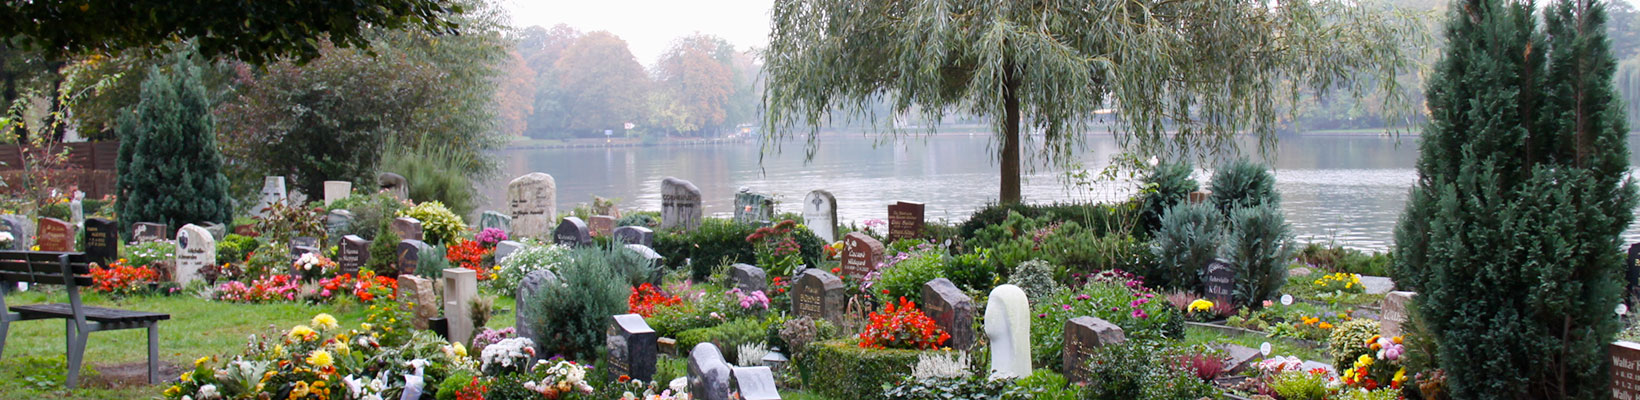 Friedhof Alt-Stralau (Foto © Juliane Bluhm)